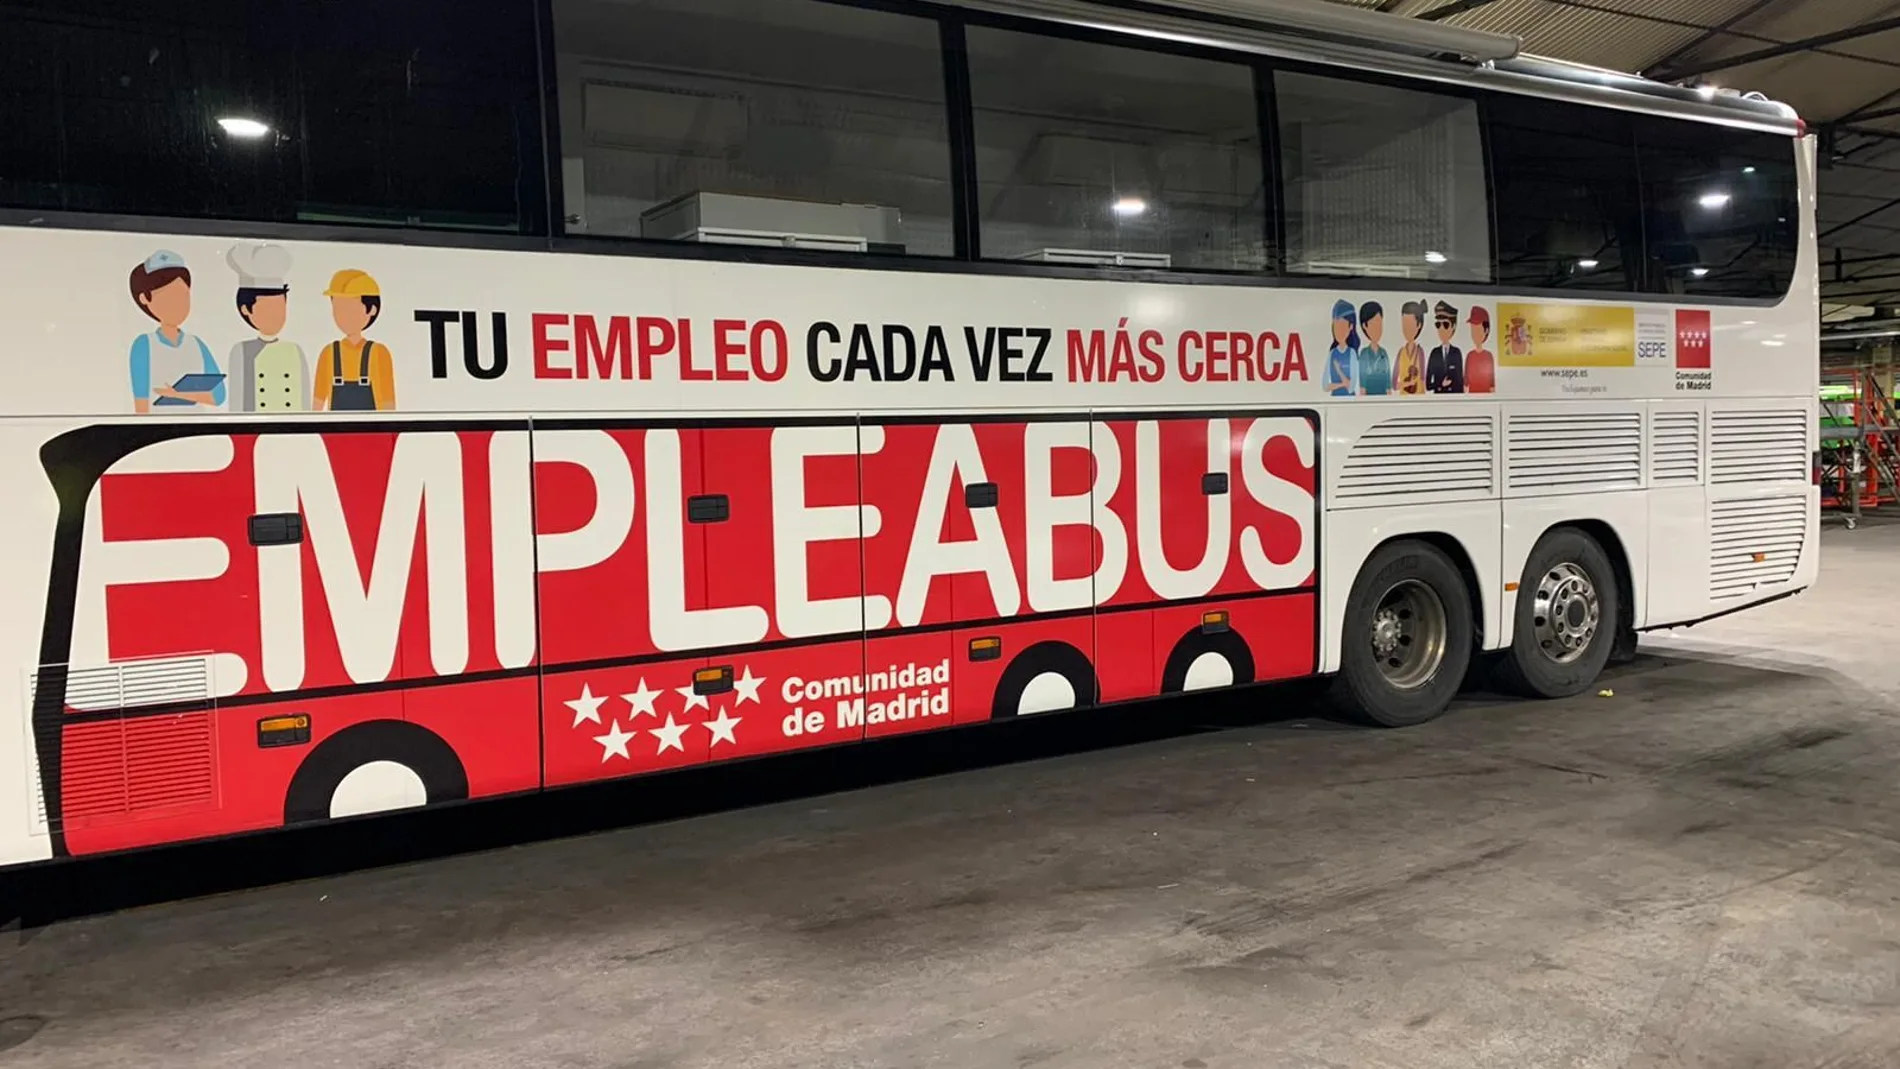 Este autobús dará servicio a una población de más de 25.000 habitantes